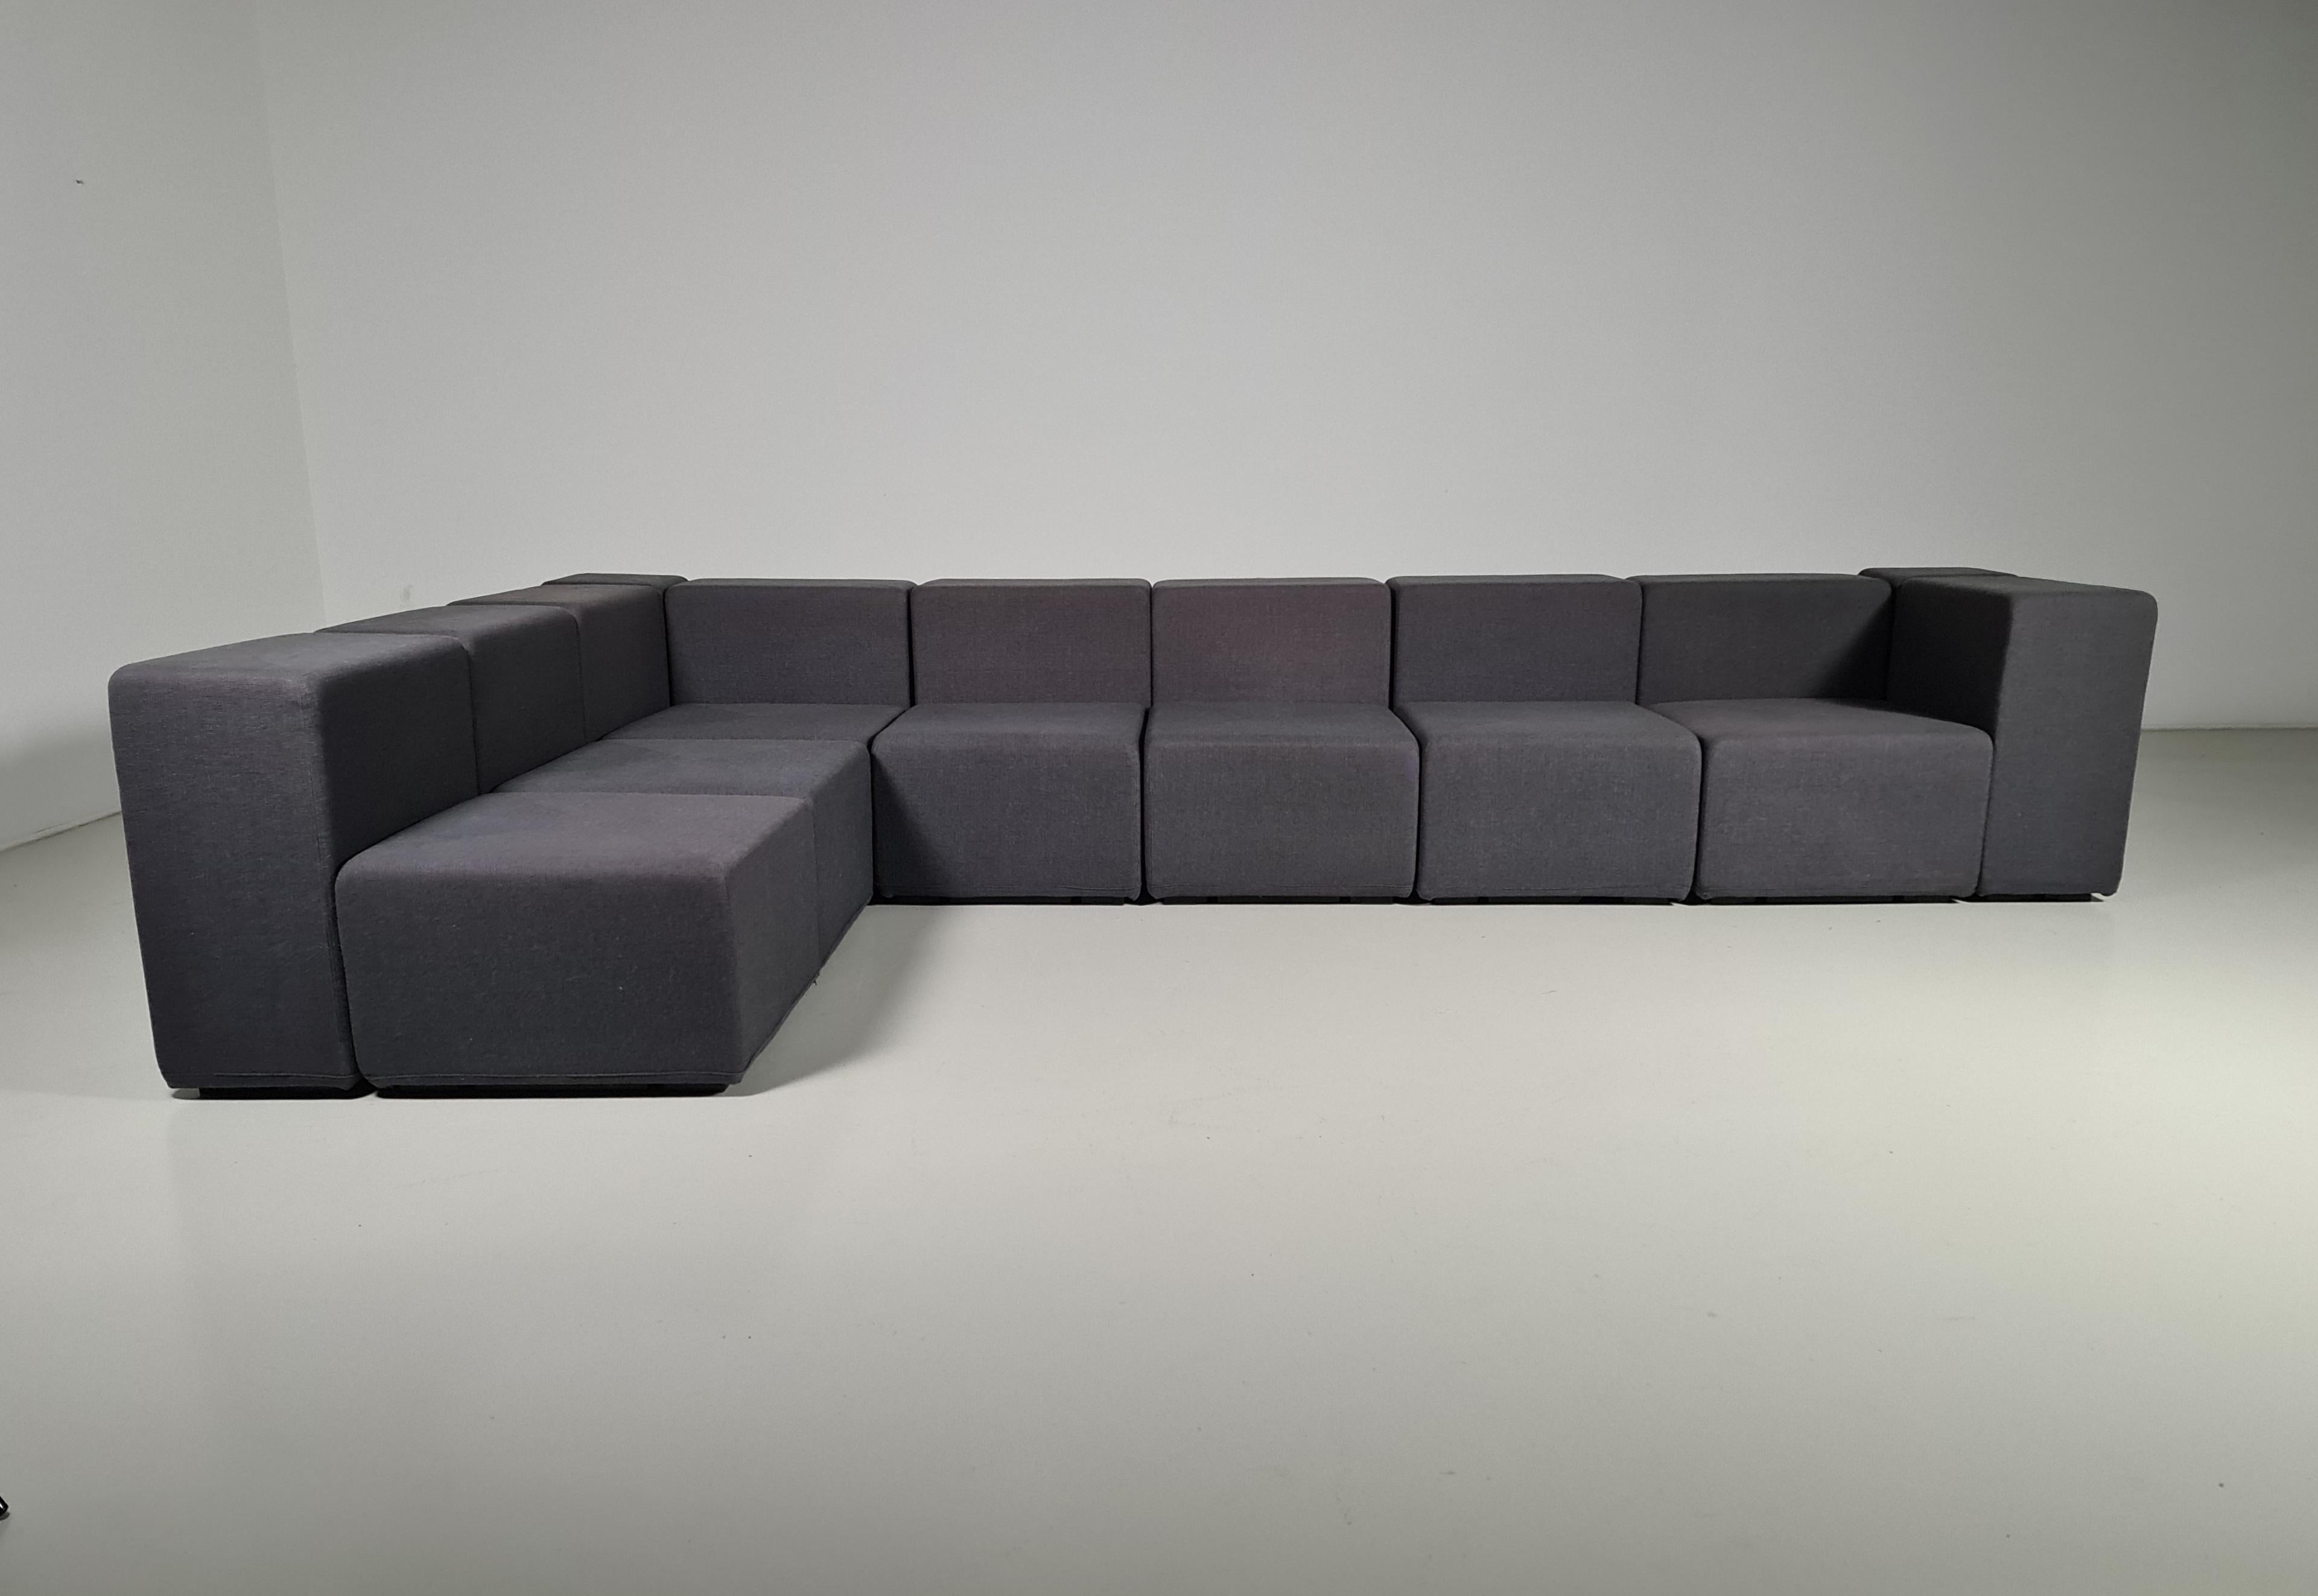 Modulares Sofa, Sistema 61, Giancarlo Piretti, Anonima Castelli, 1970er Jahre

Sieben Sitze mit Rückenlehne, gepolstert mit der ursprünglichen grauen Wolle.
Die Sitze sind durch verchromte Stahlteile miteinander verbunden und bestehen aus einem